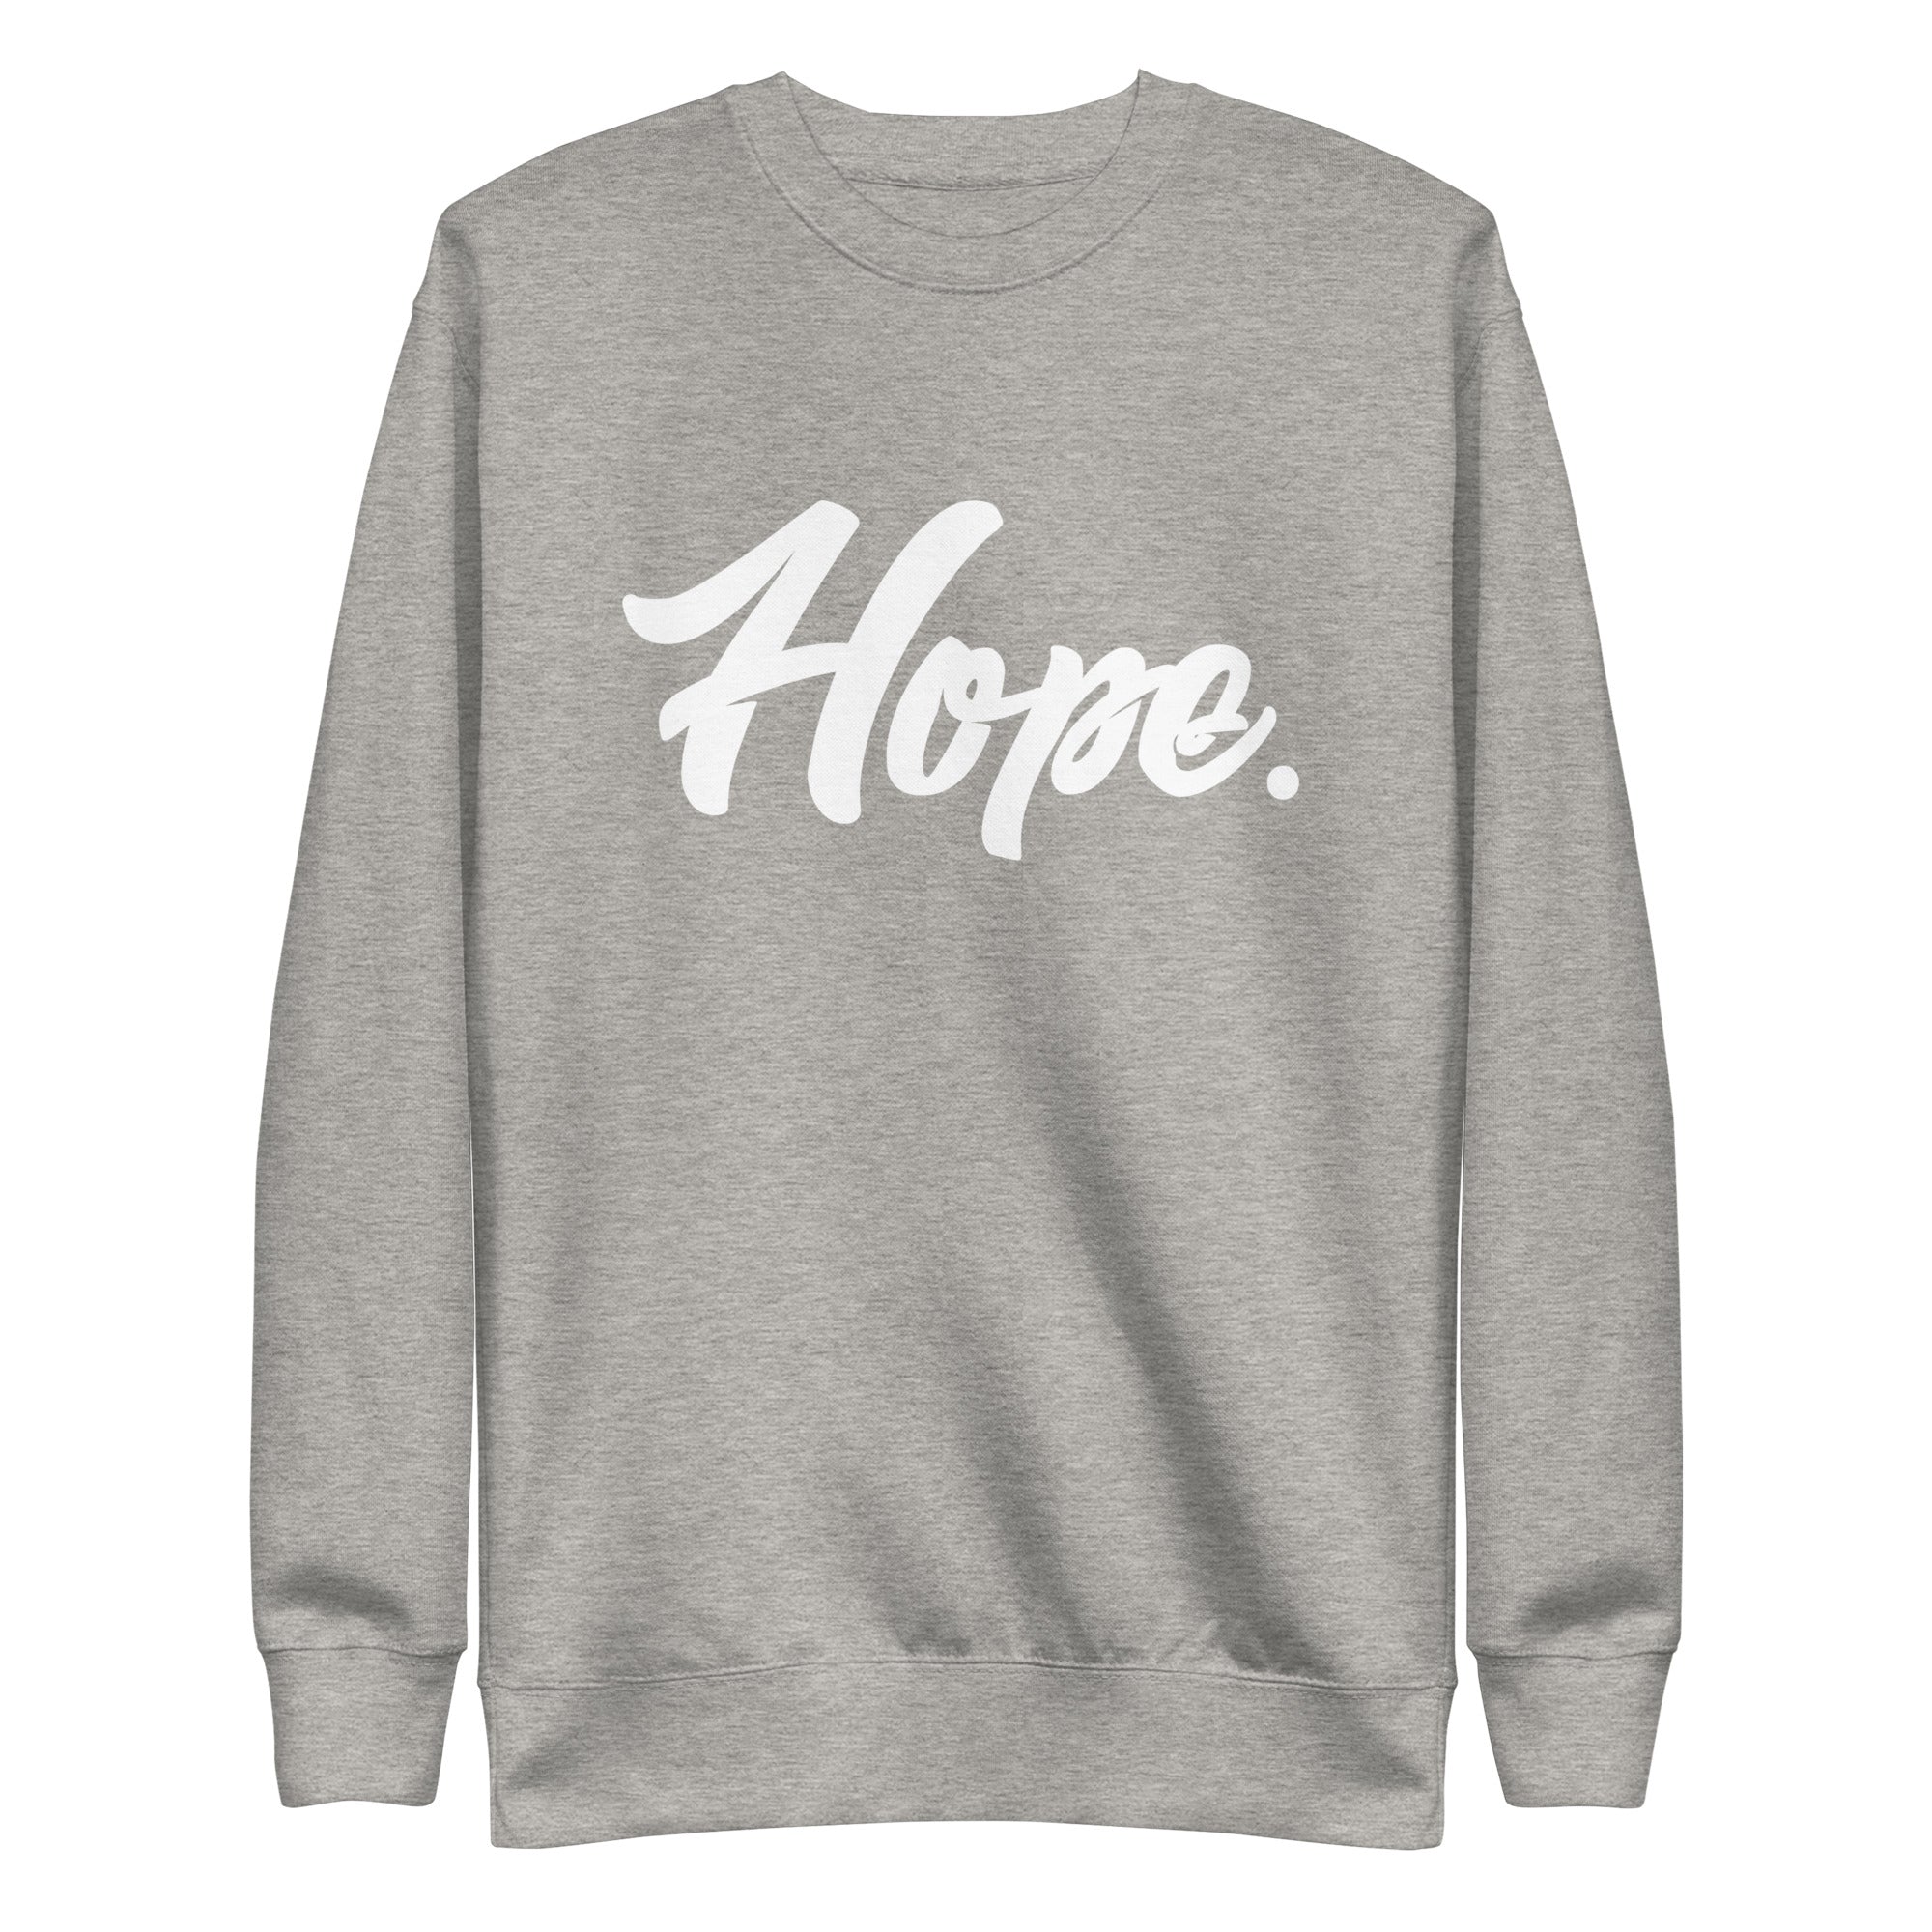 Hope. Premium Sweatshirt